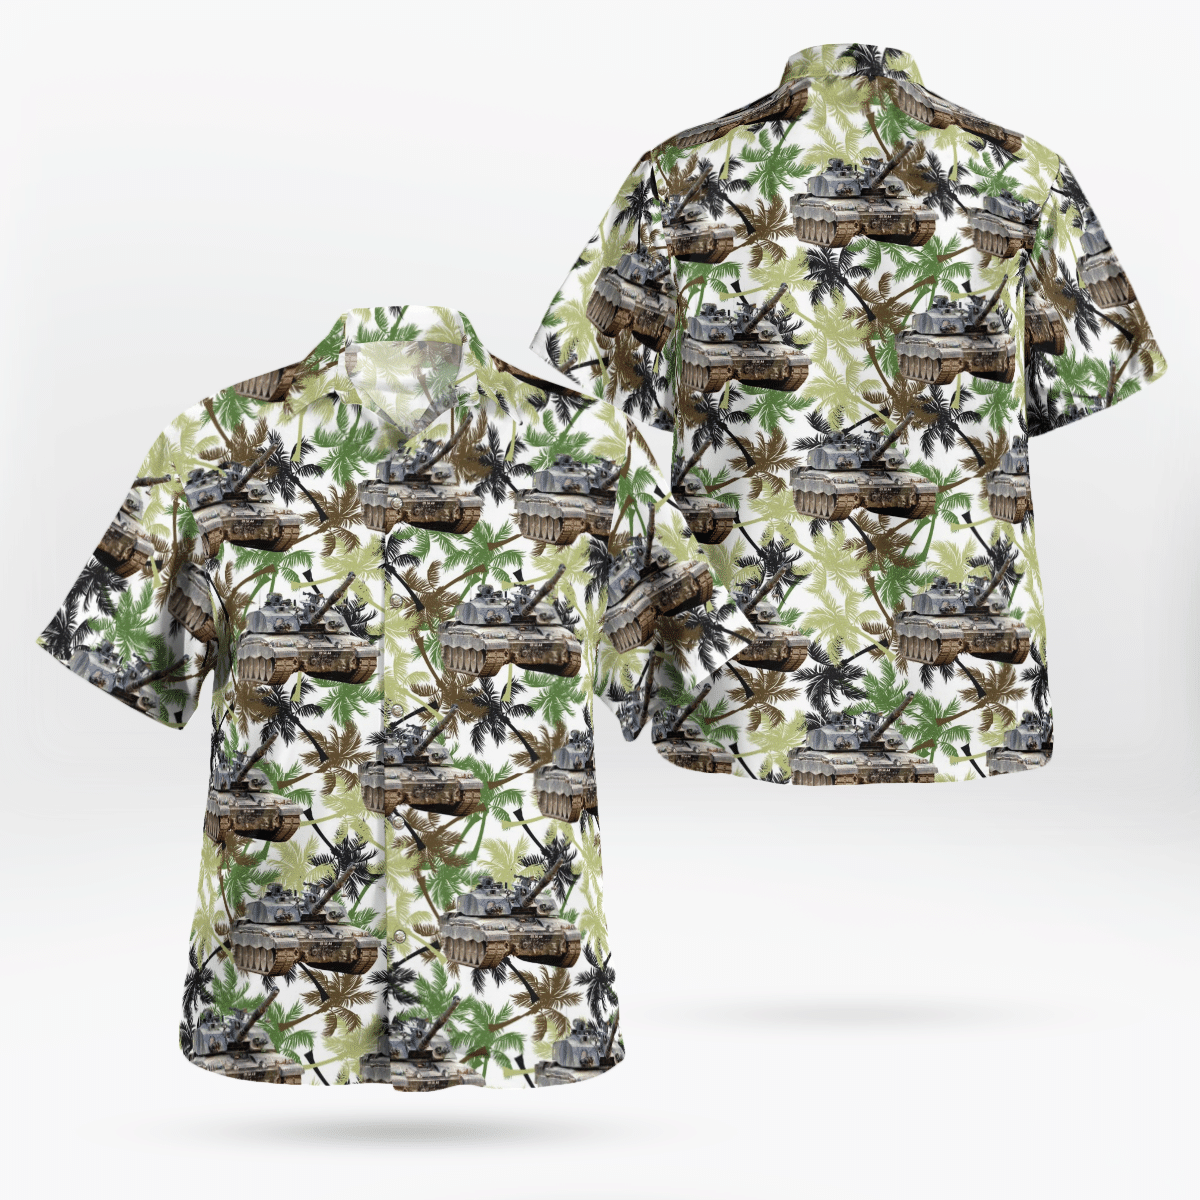 You won't regret buying these Aloha Shirt 36